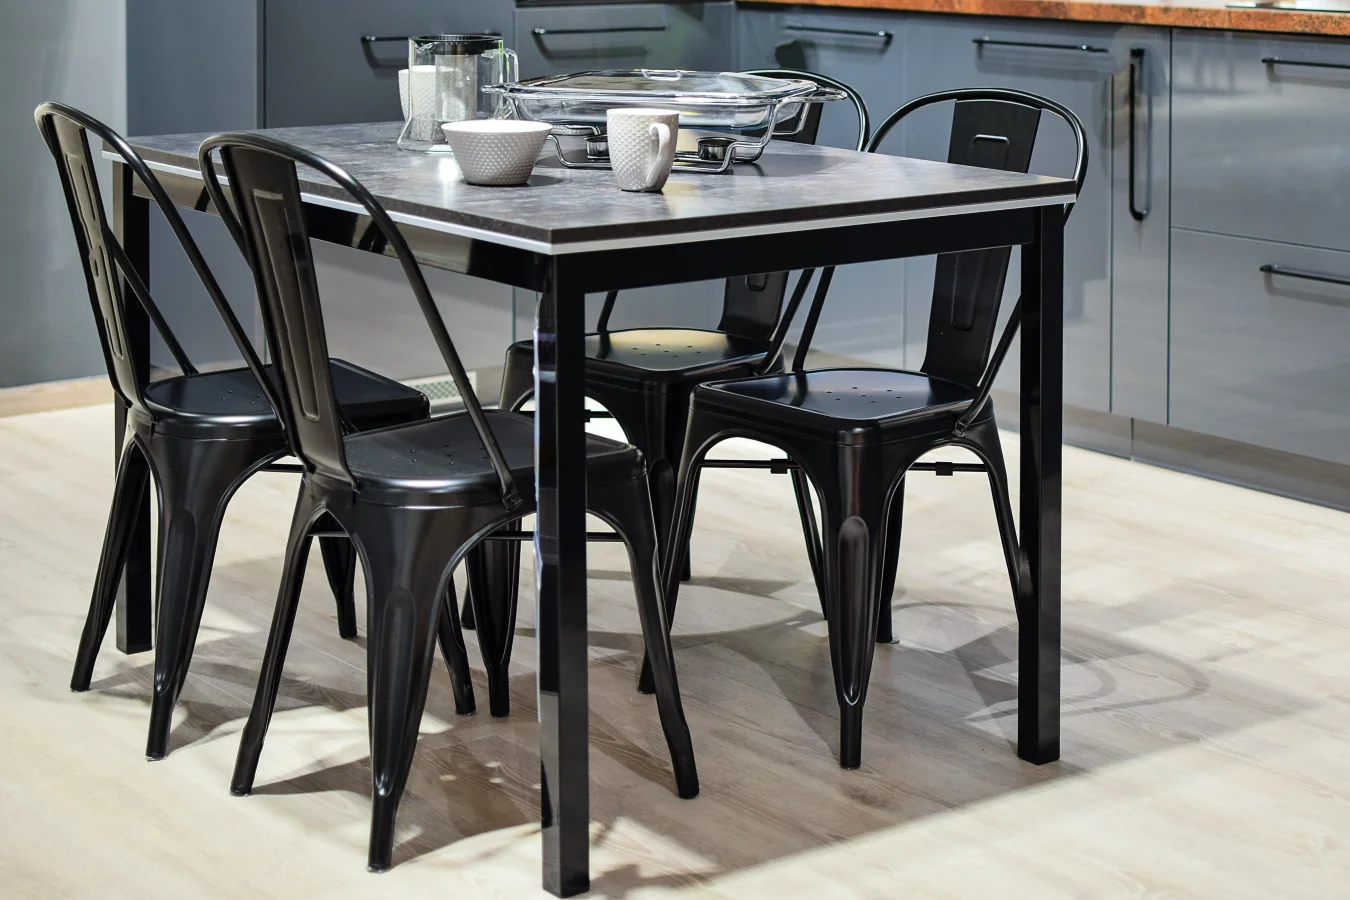 Ciemny stół i ciemne krzesła to dobre połączenie, jeśli występują w nim jasne elementy, a konstrukcja mebli jest lekka.